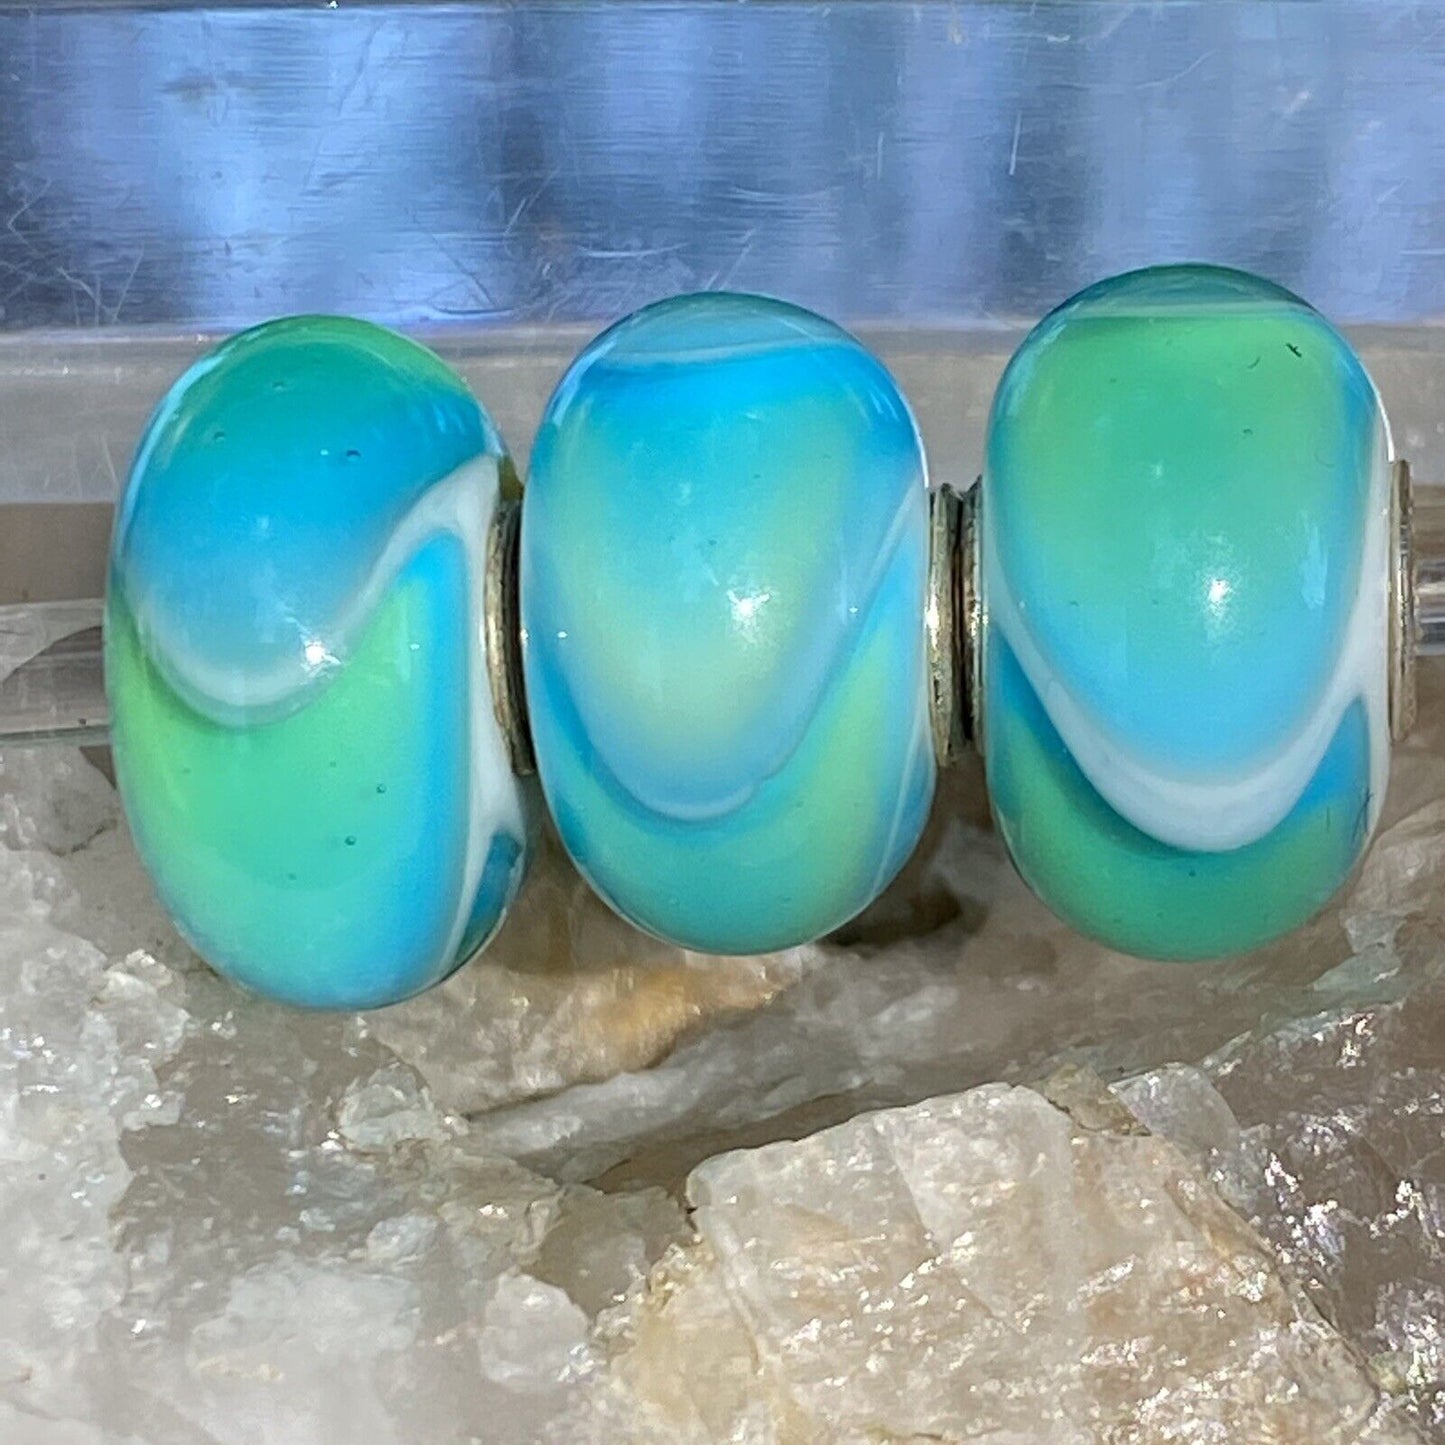 RETIRED Trollbeads Turquoise Armadillo Bead #61164 Designer Lise Aagaard Authentic